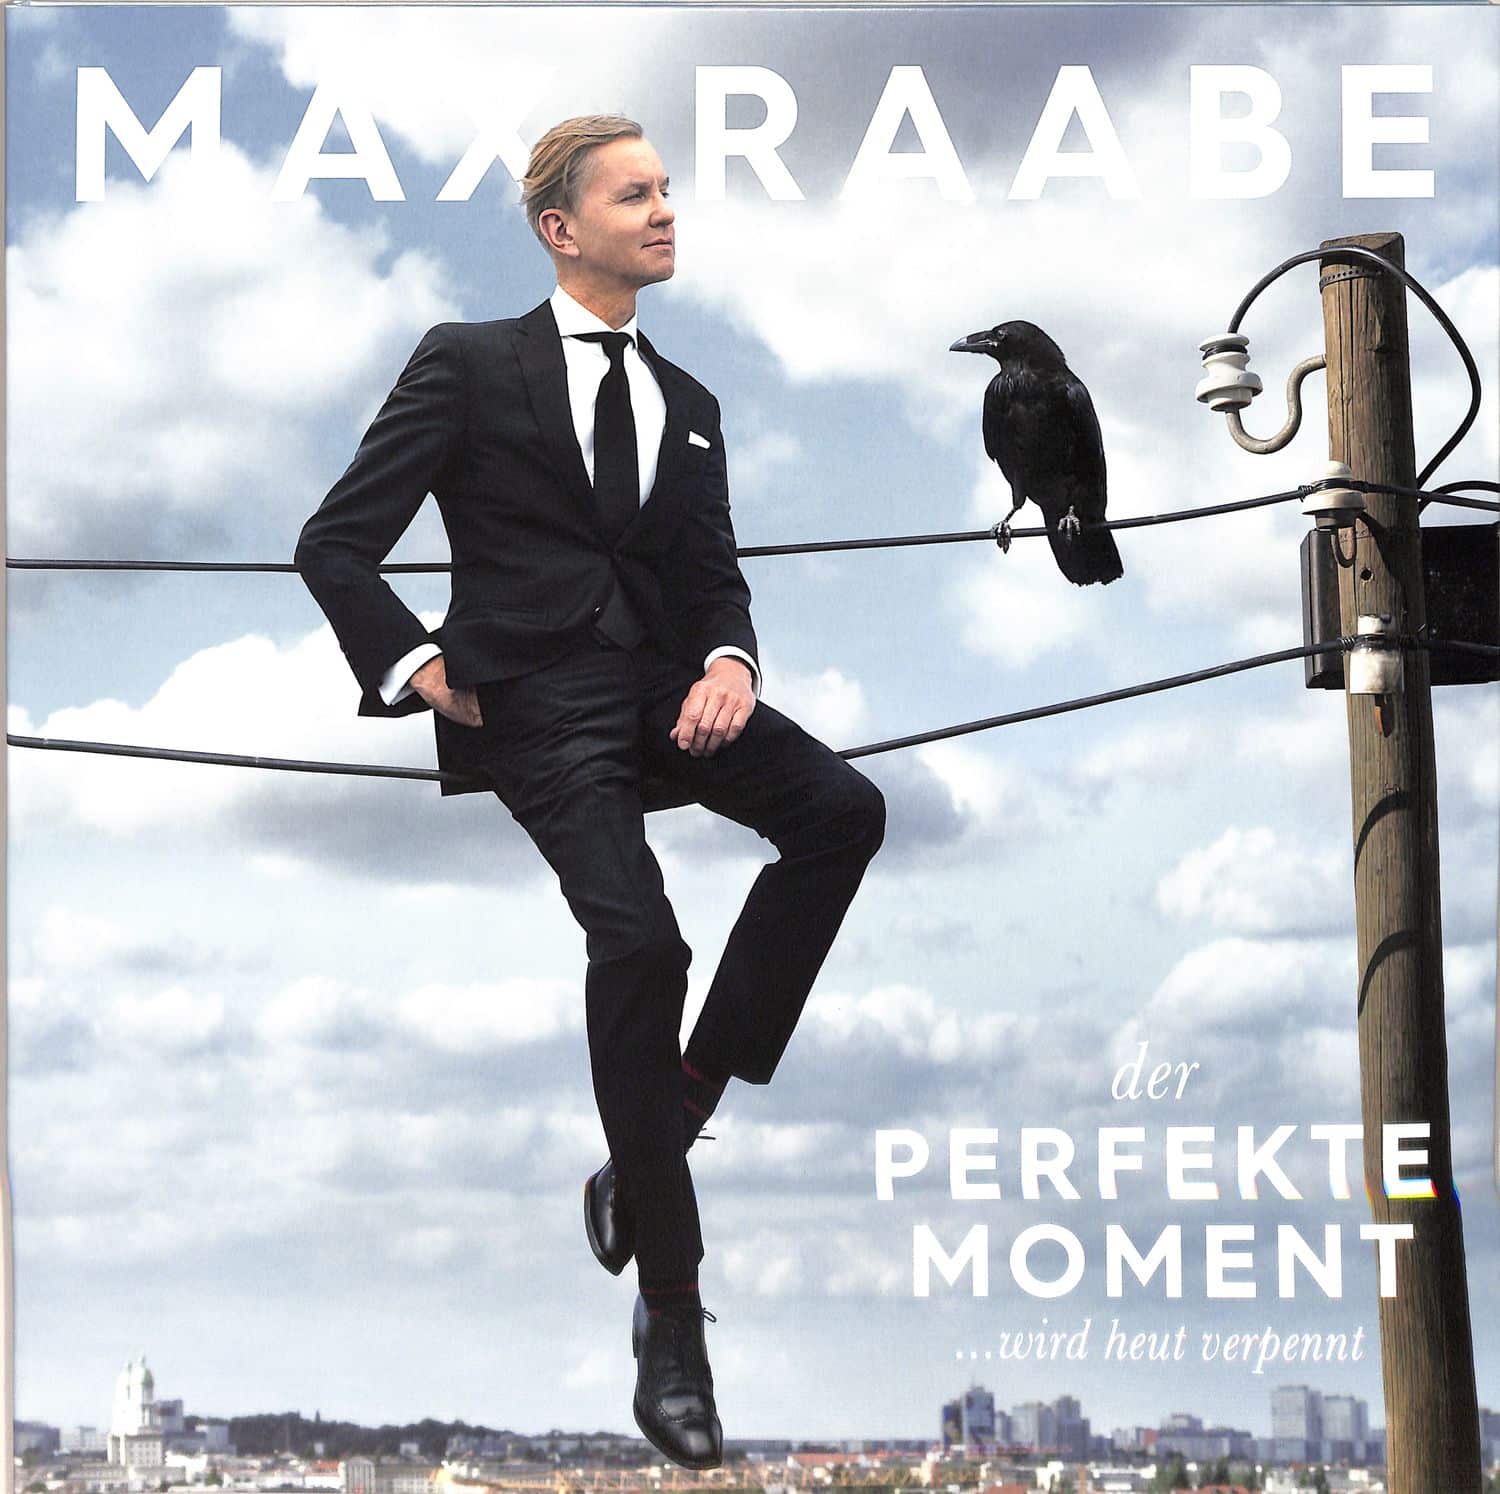 Max Raabe - DER PERFEKTE MOMENT... WIRD HEUT VERPENNT 